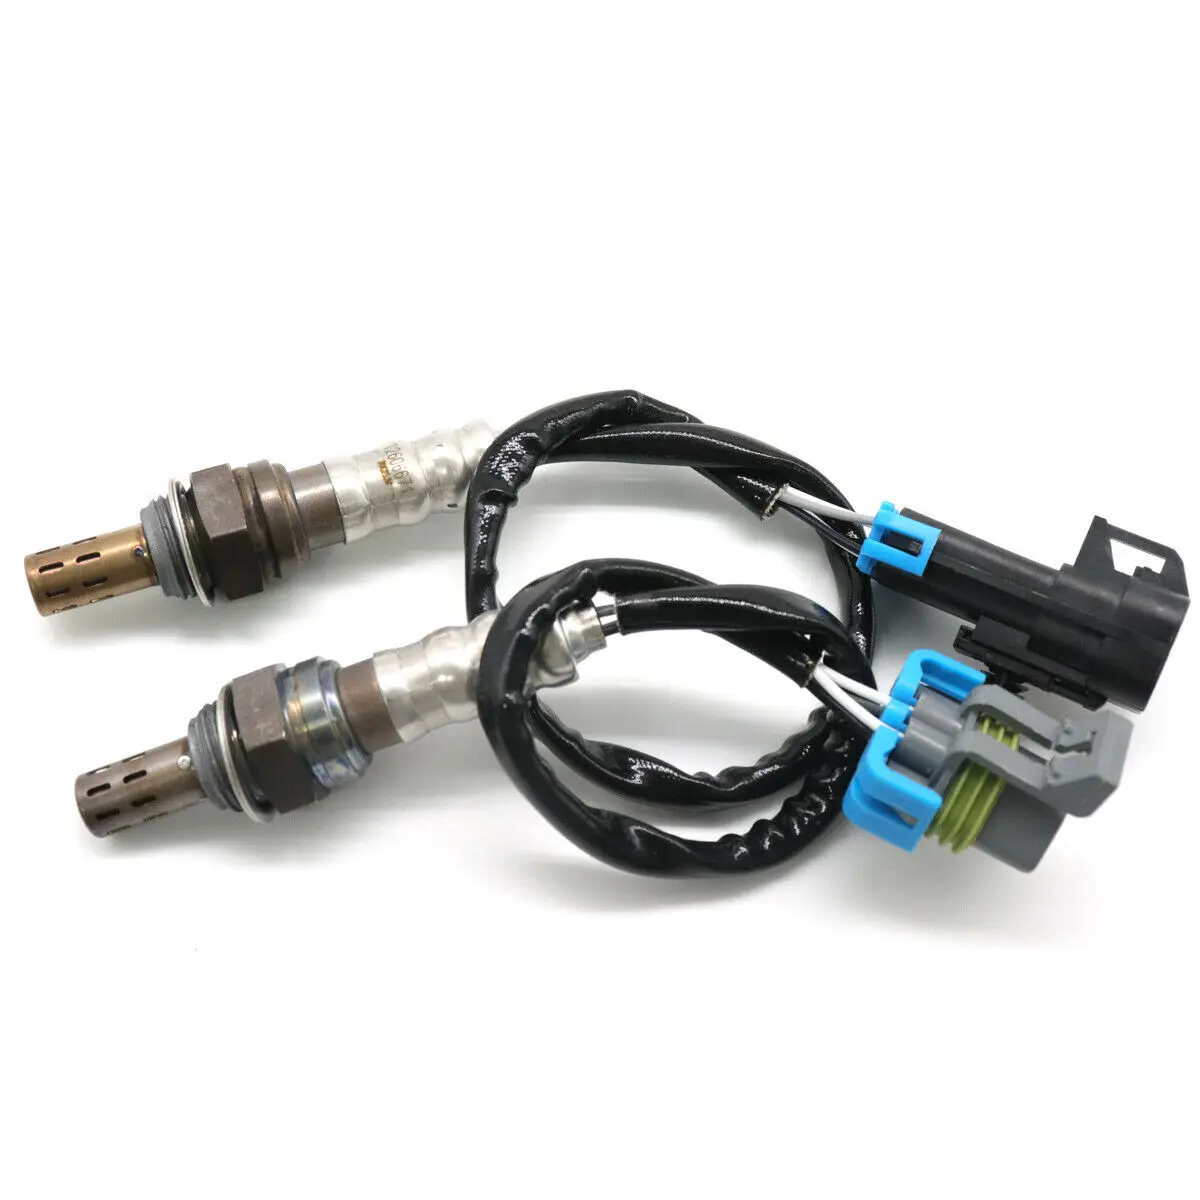 

2pcs For Chevrolet Oxygen Sensor 2234-4242, 234-4530, 234-4250, 234-4294